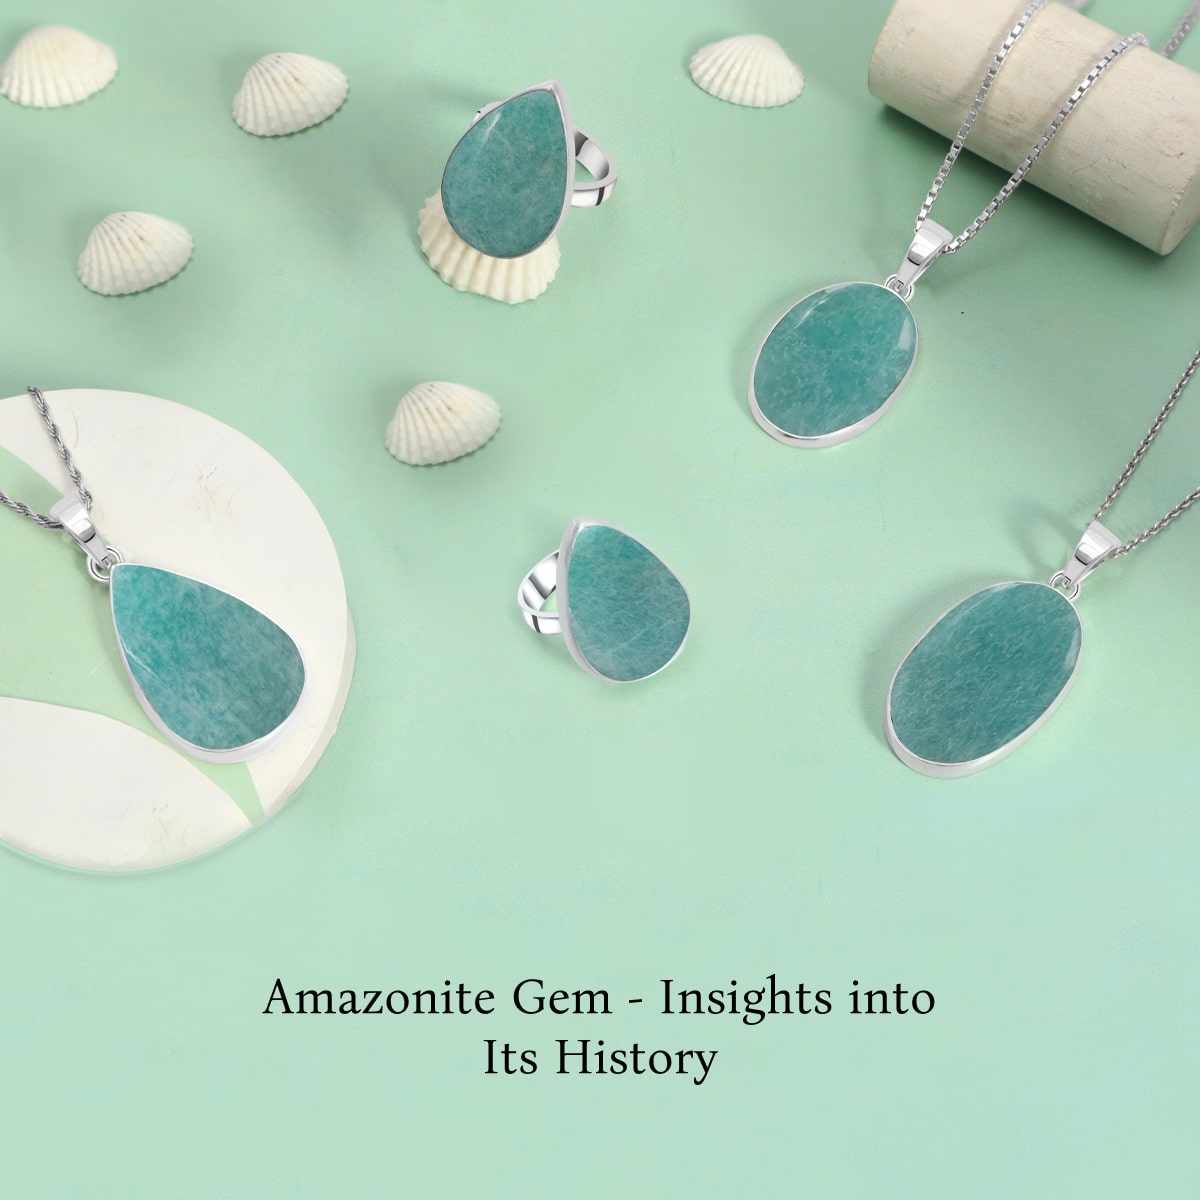 History of Amazonite Gem